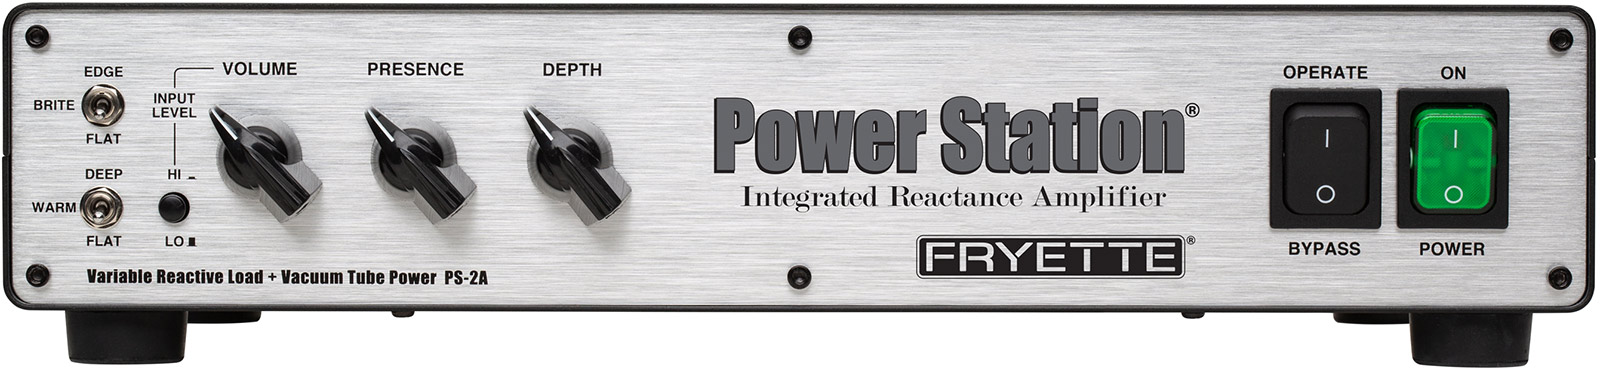 Fryette Power Station Ps2-a Reactive Load + Vacuum Tube Amp - Attenuateur De Puissance - Variation 1